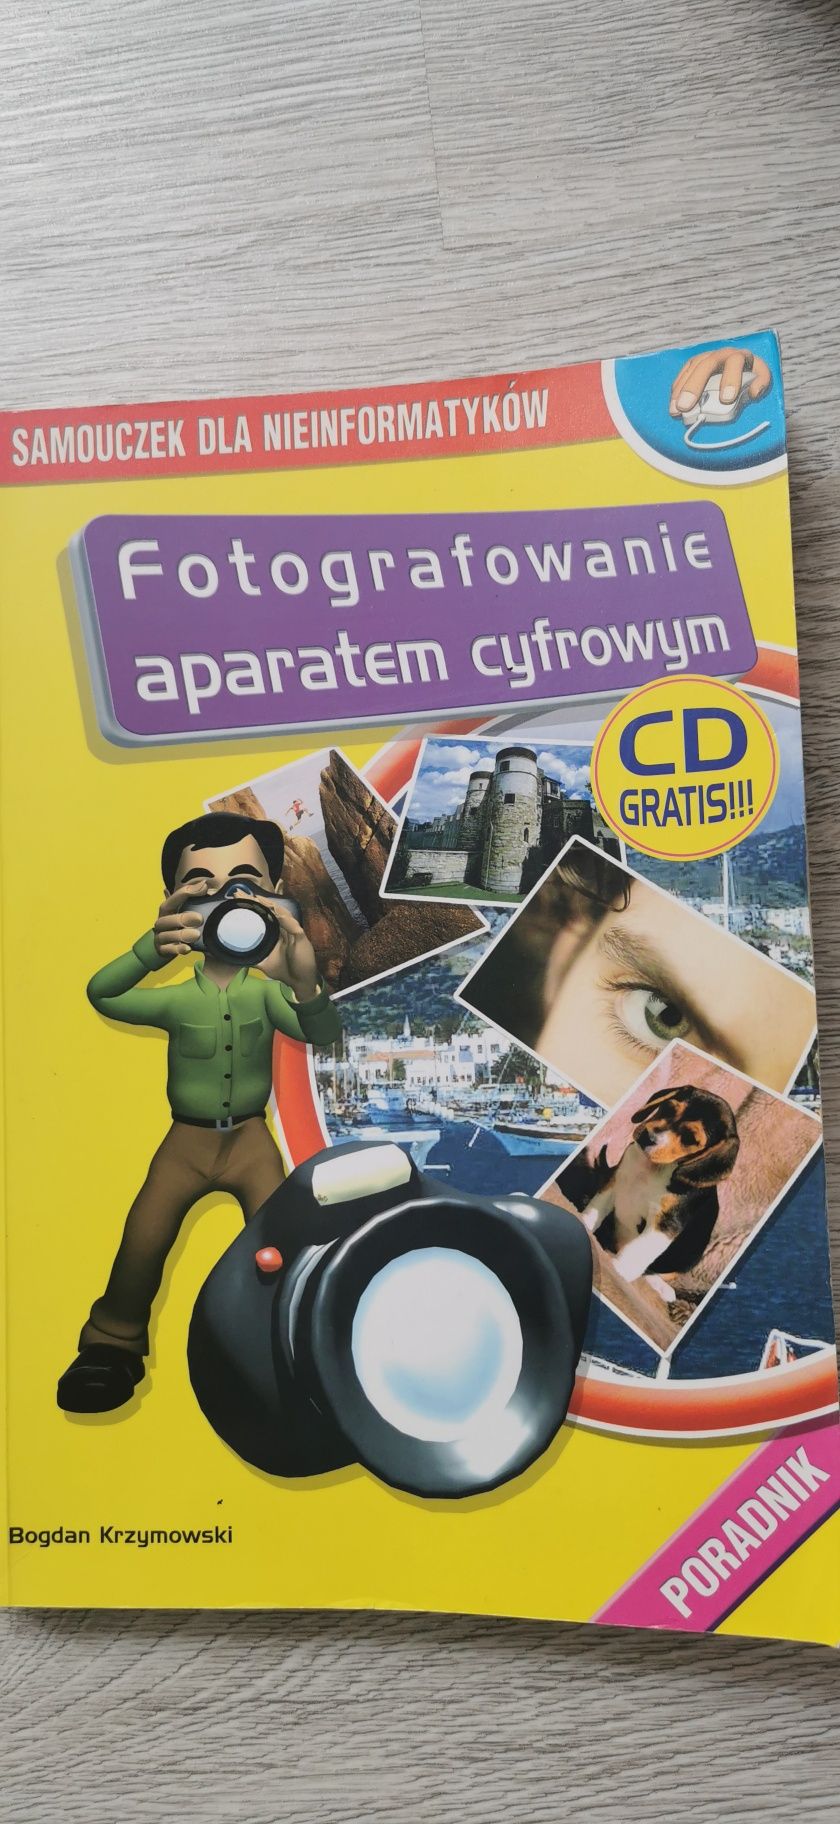 Fotografowanie aparatem cyfrowym
Krzymowski Bogdan